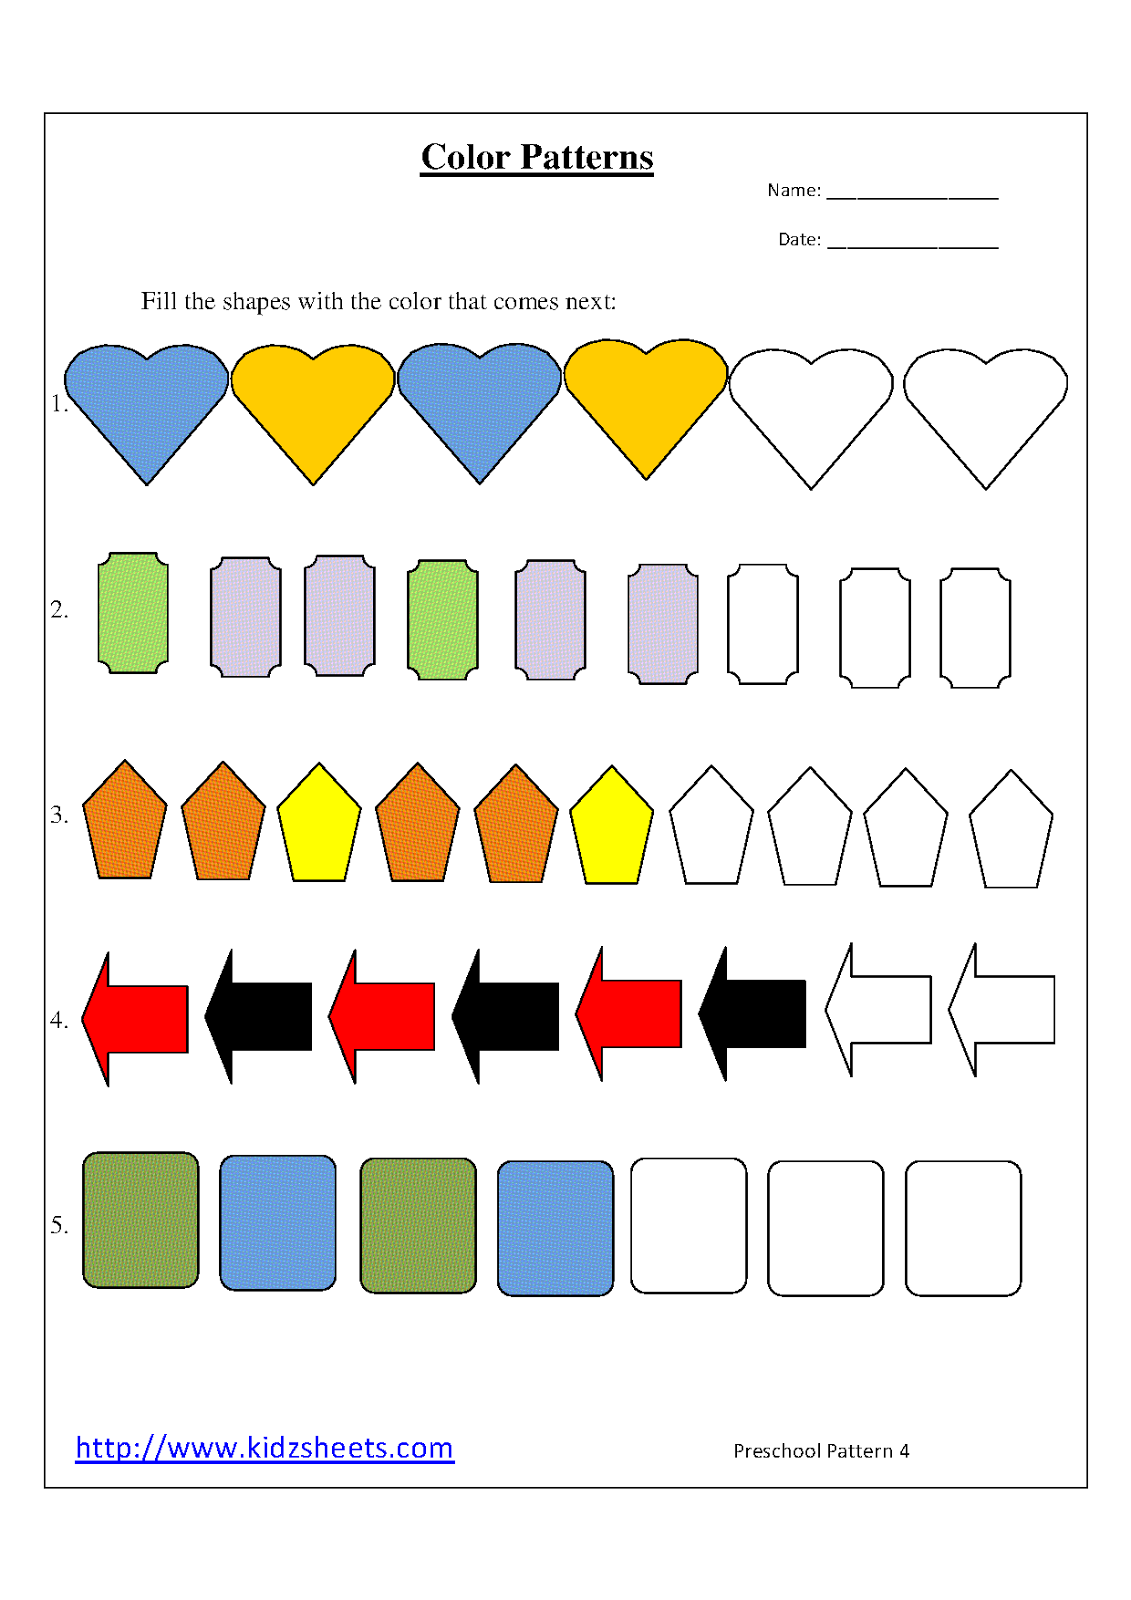 color patterns kindergarten worksheet for preschool For  Patterns patterns Preschoolers Worksheets